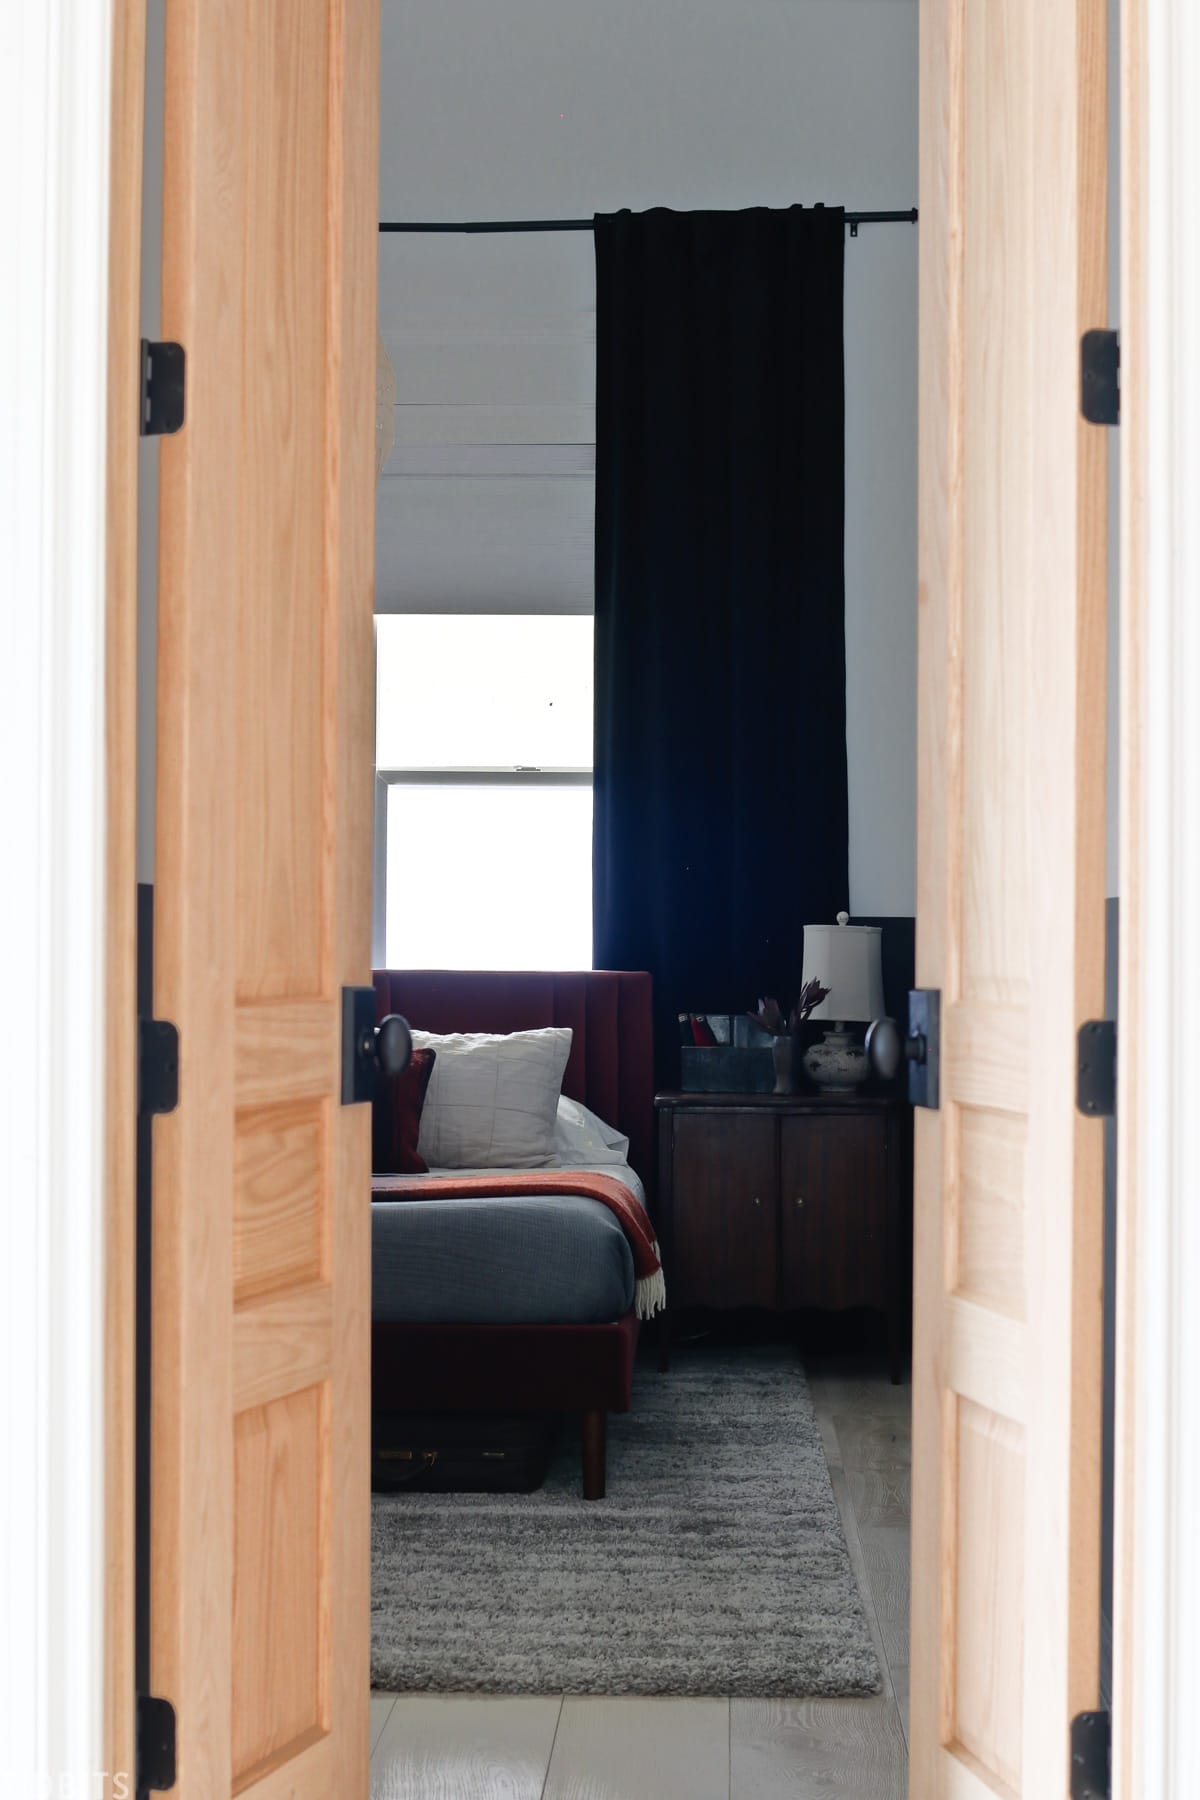 wood oak doors entering into bedroom